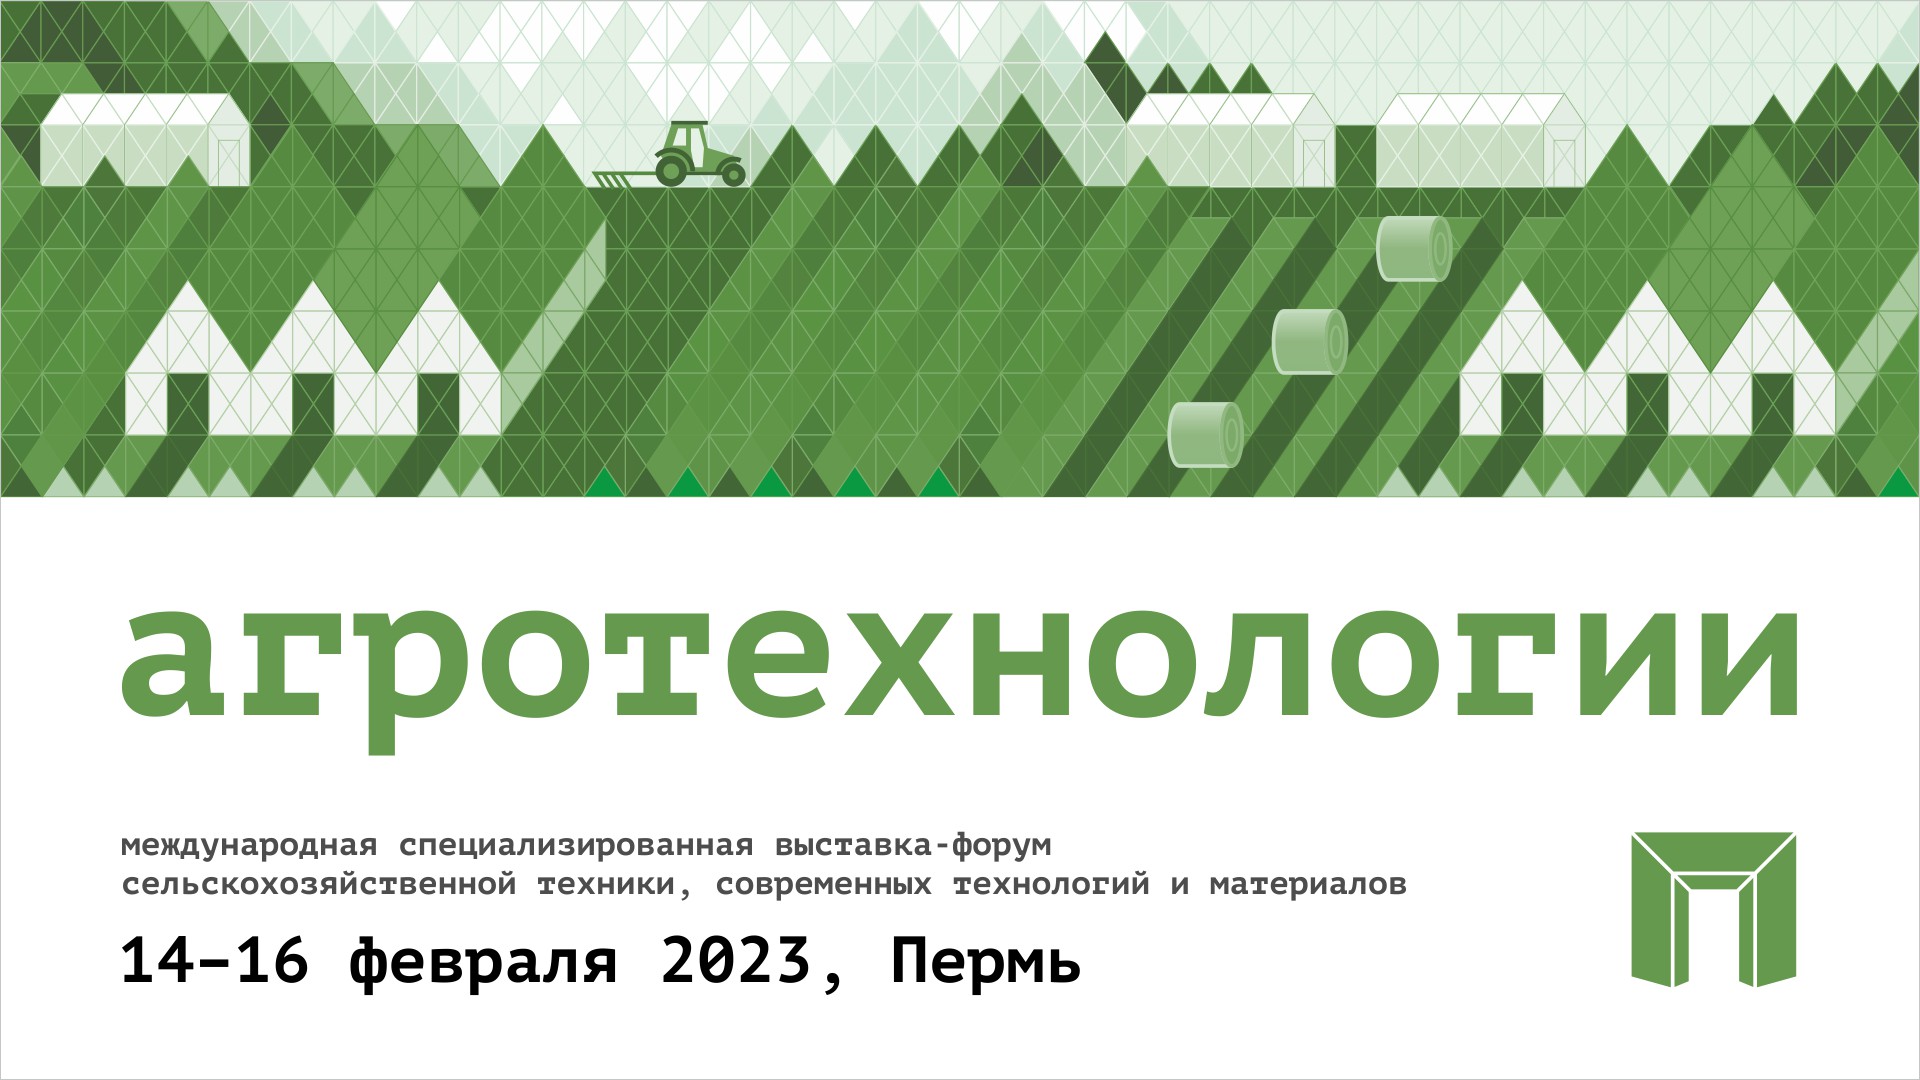 В Перми пройдёт отраслевая выставка-форум «Агротехнологии»